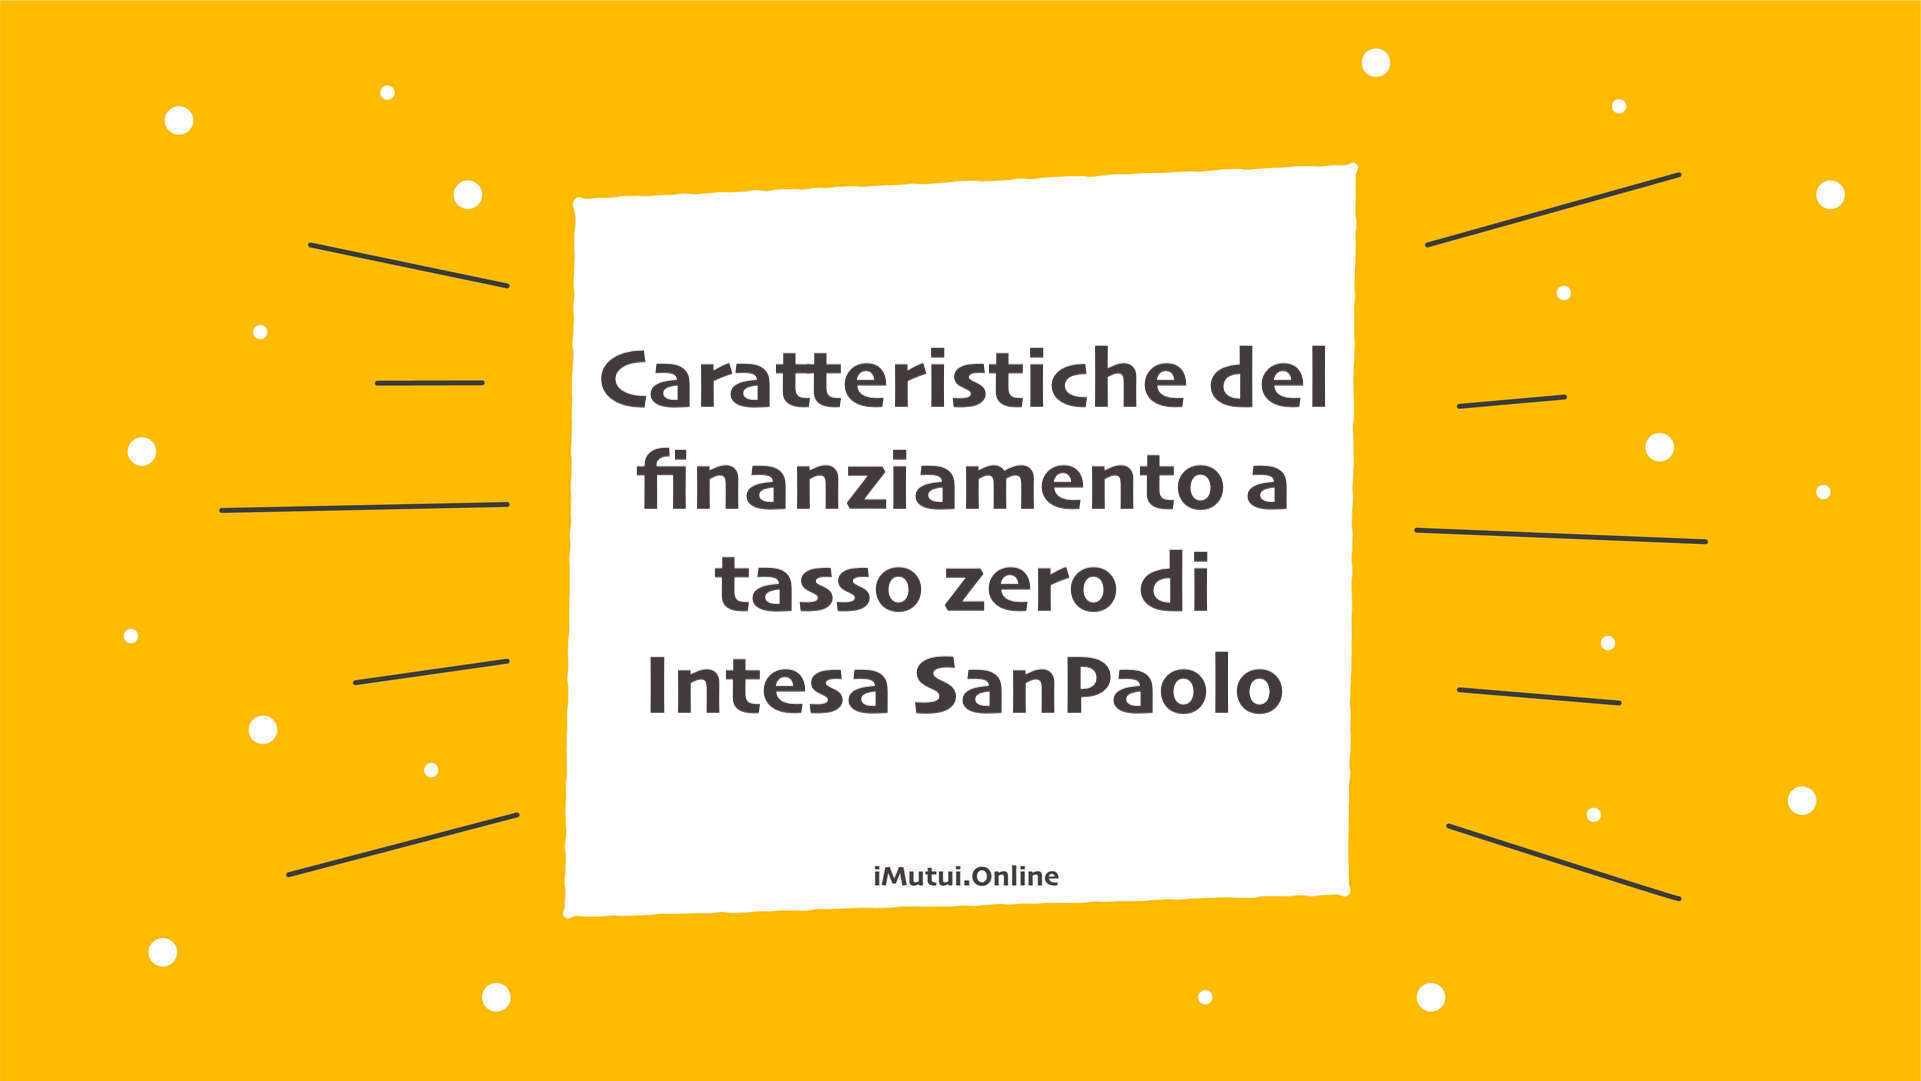 Caratteristiche del finanziamento a tasso zero di Intesa SanPaolo